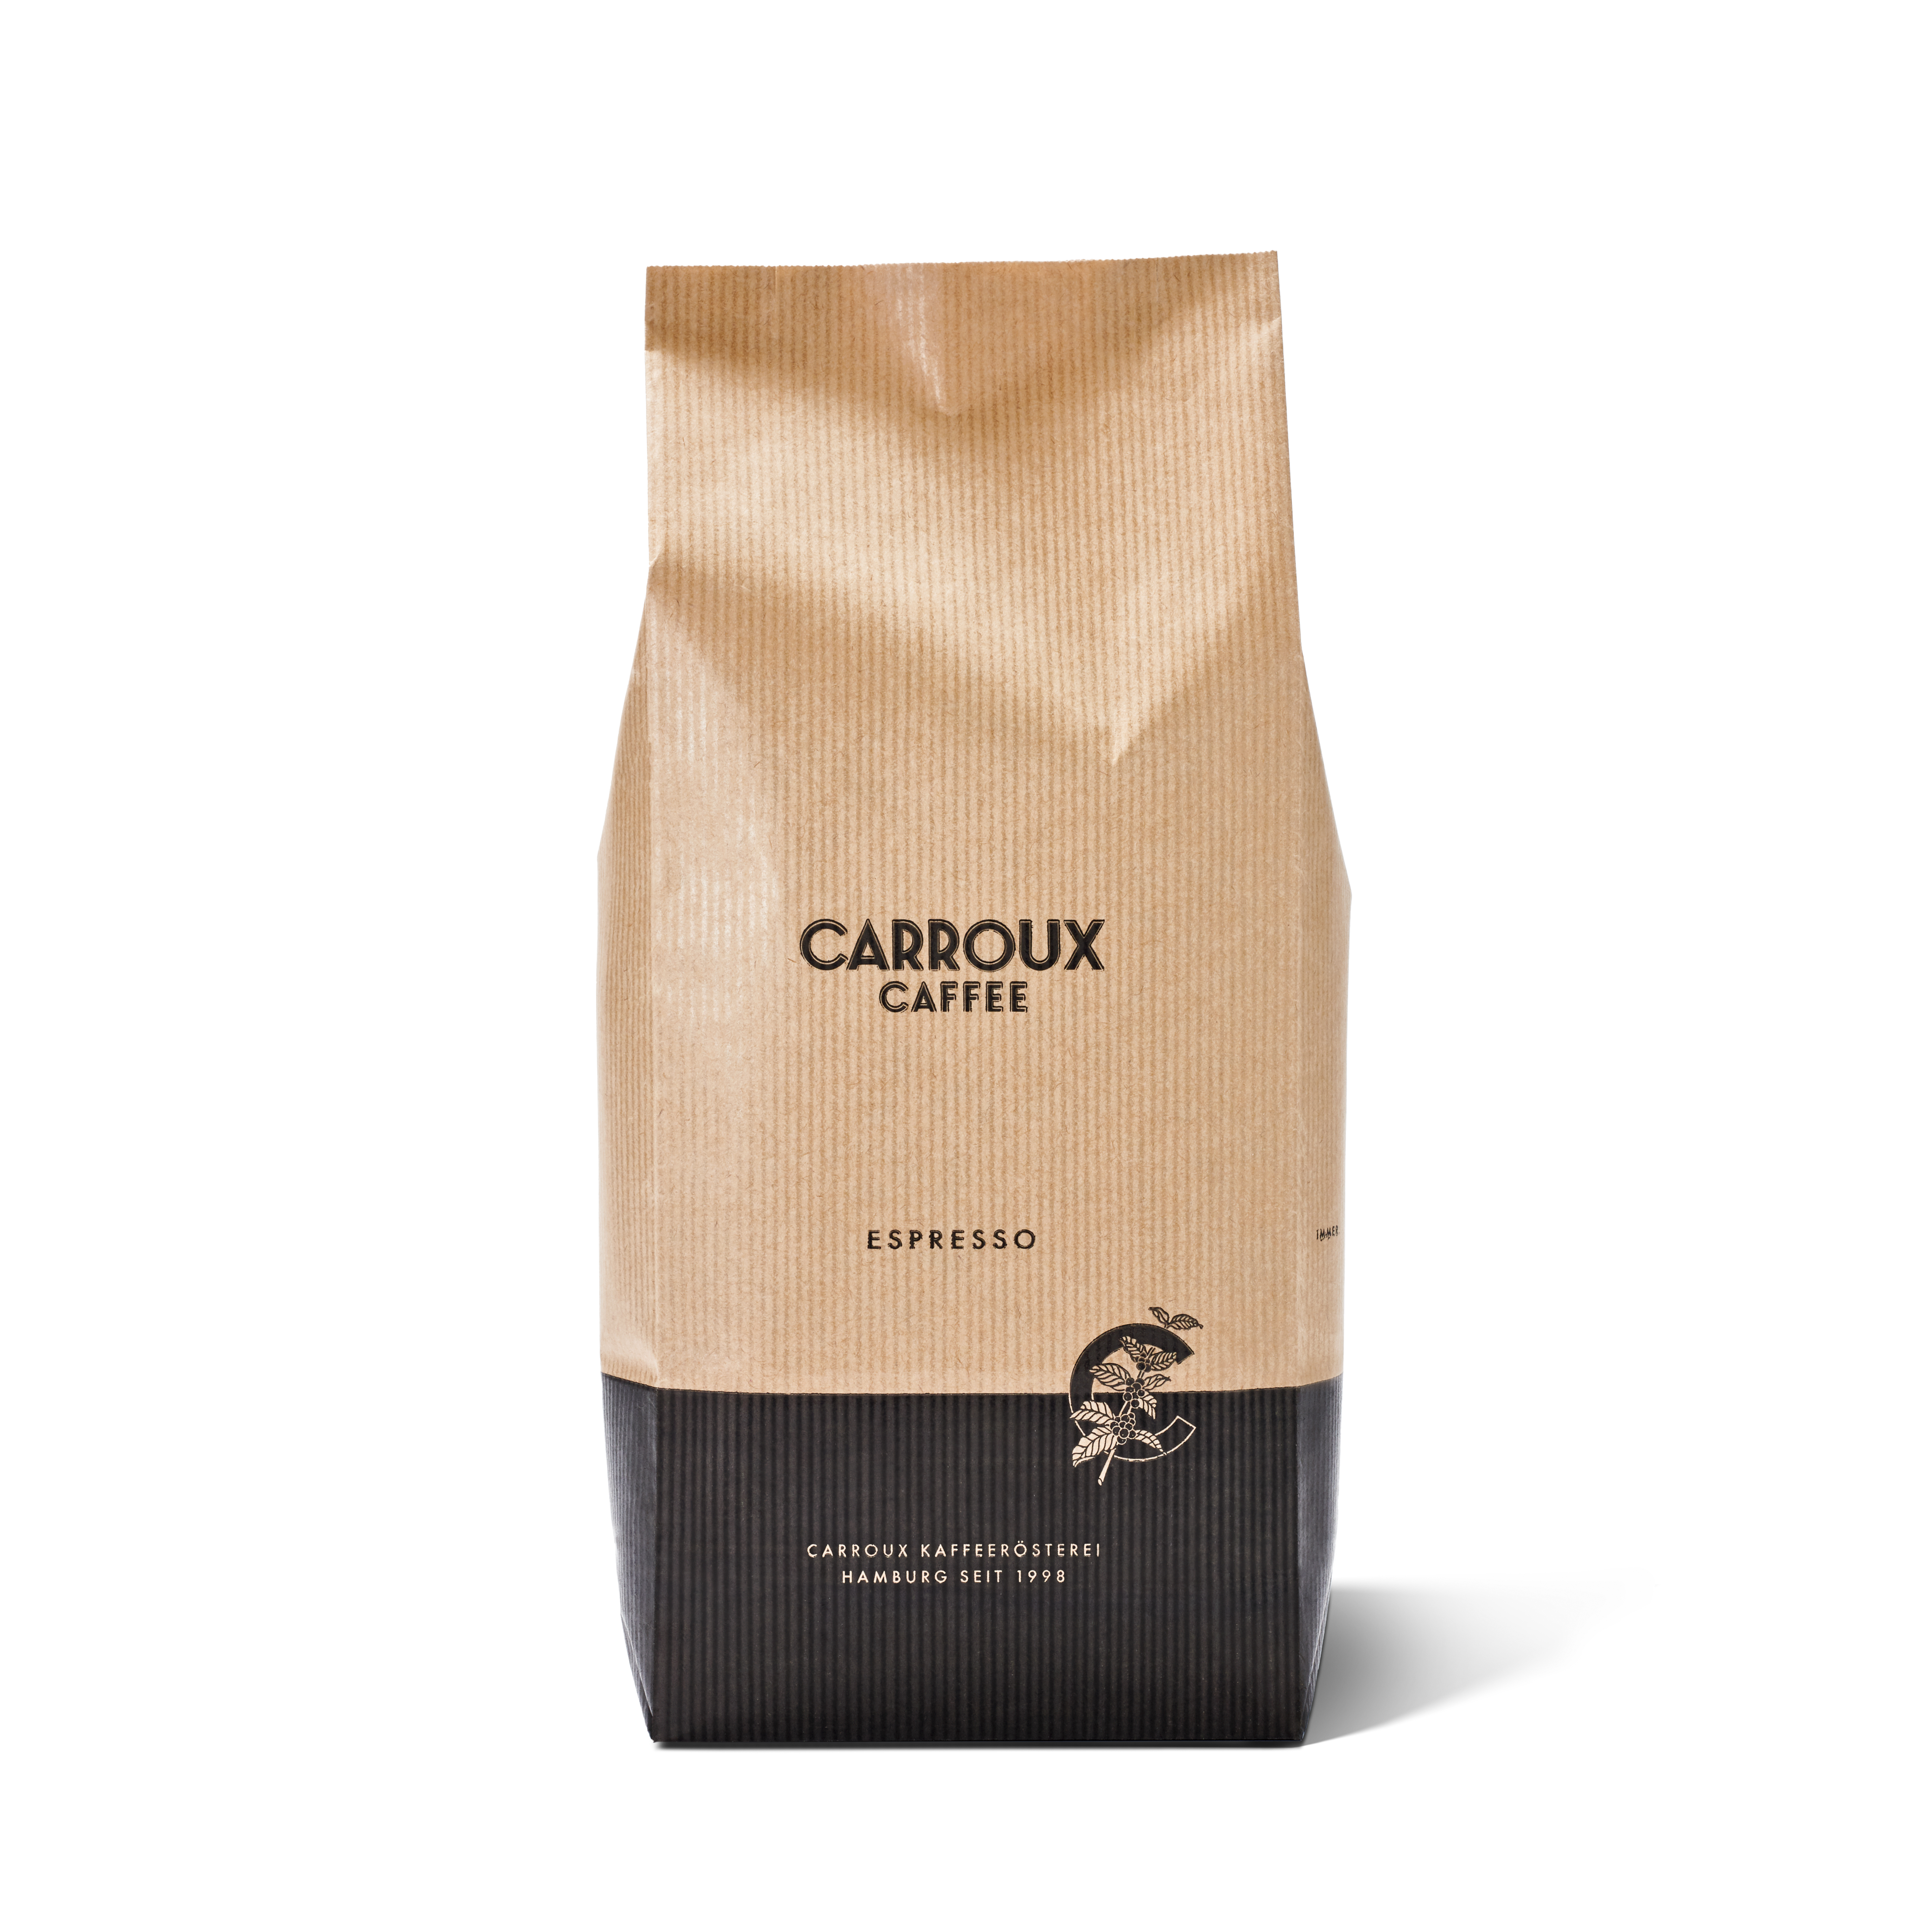 Carroux espresso - Alle Favoriten unter allen analysierten Carroux espresso